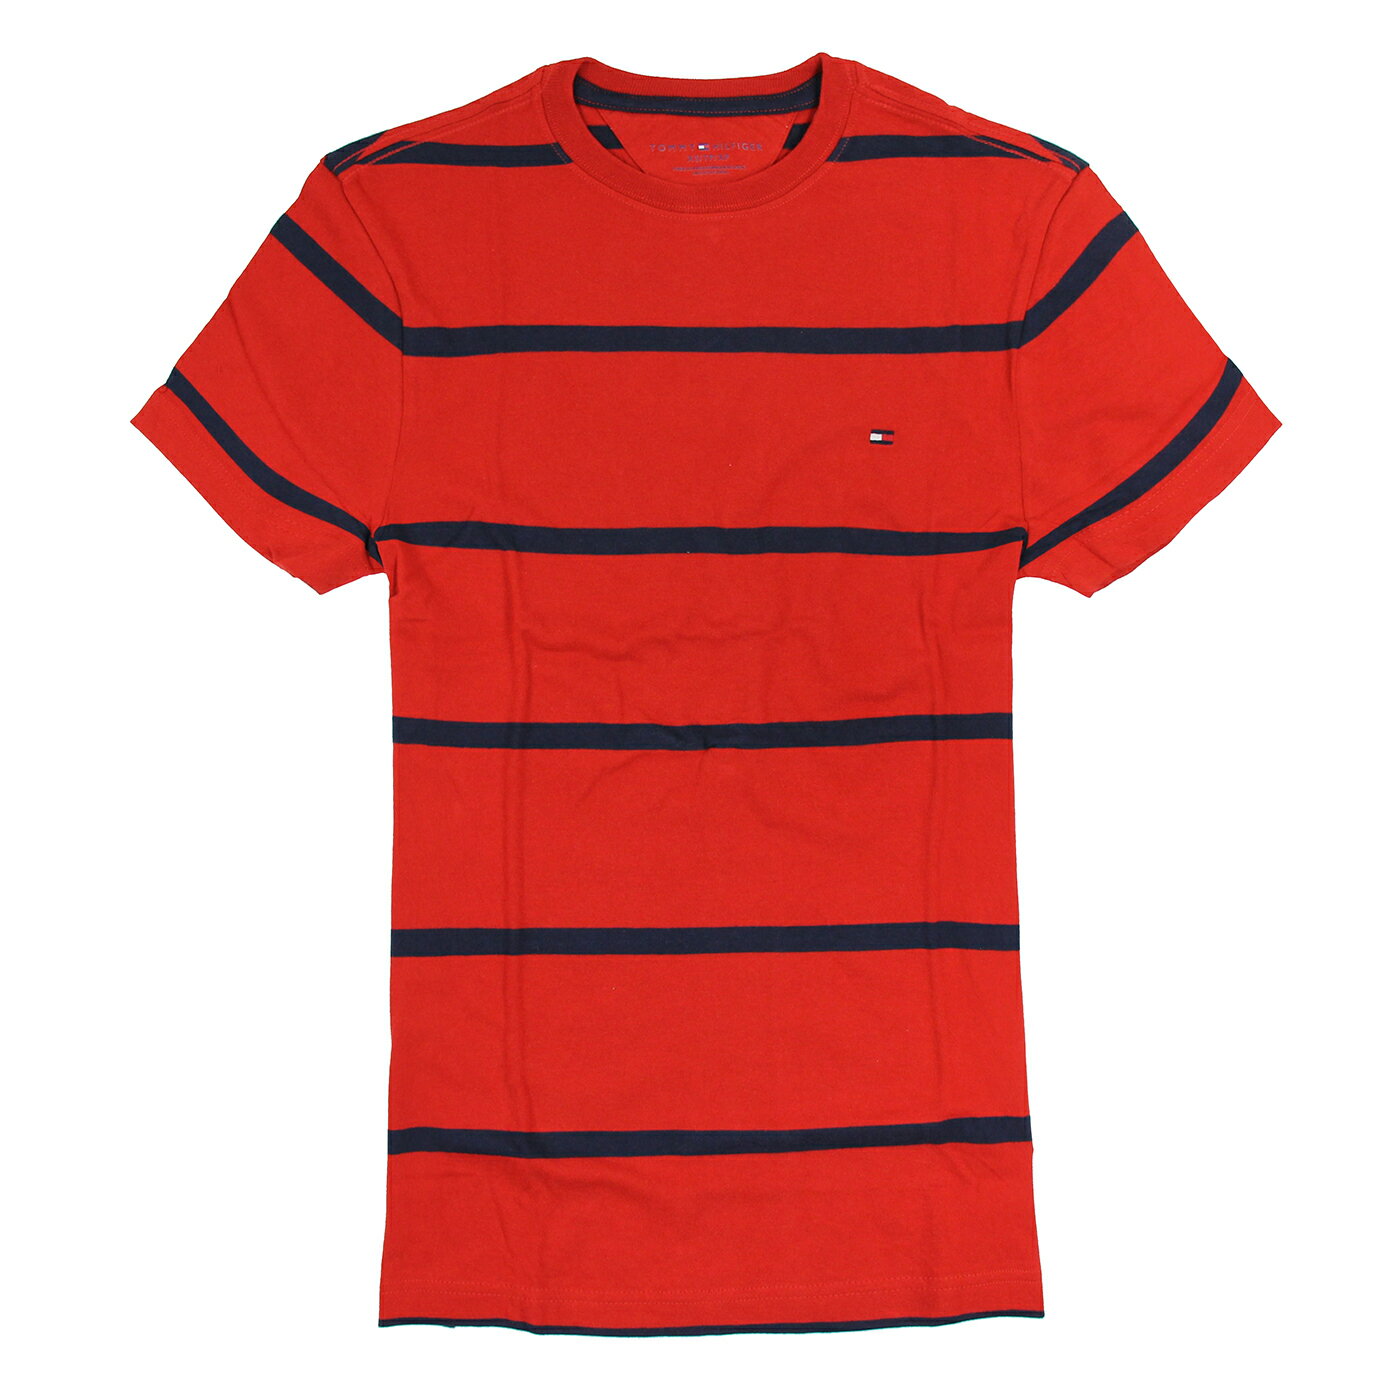 美國百分百【Tommy Hilfiger】T恤 TH 男 圓領 T-shirt 短袖 條紋 紅 深藍 XS S E675